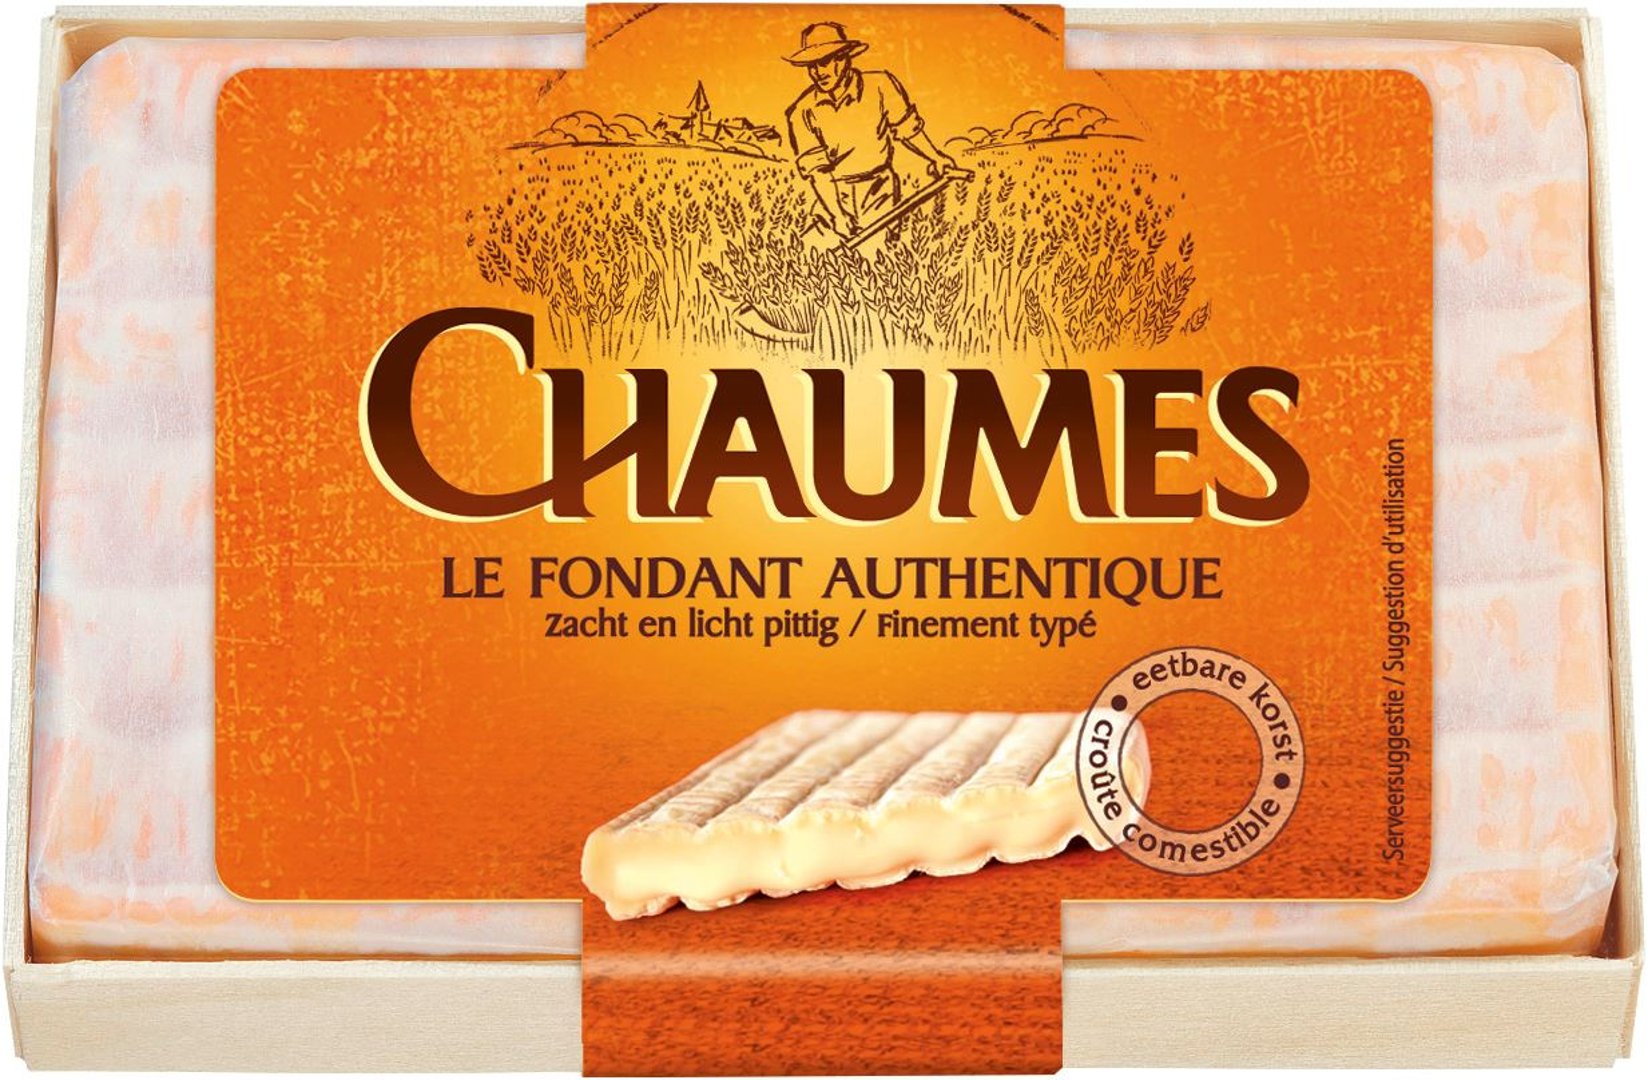 Chaumes - Le Fondant Authentique 57 % Fett - 1 x 150 g Schachtel